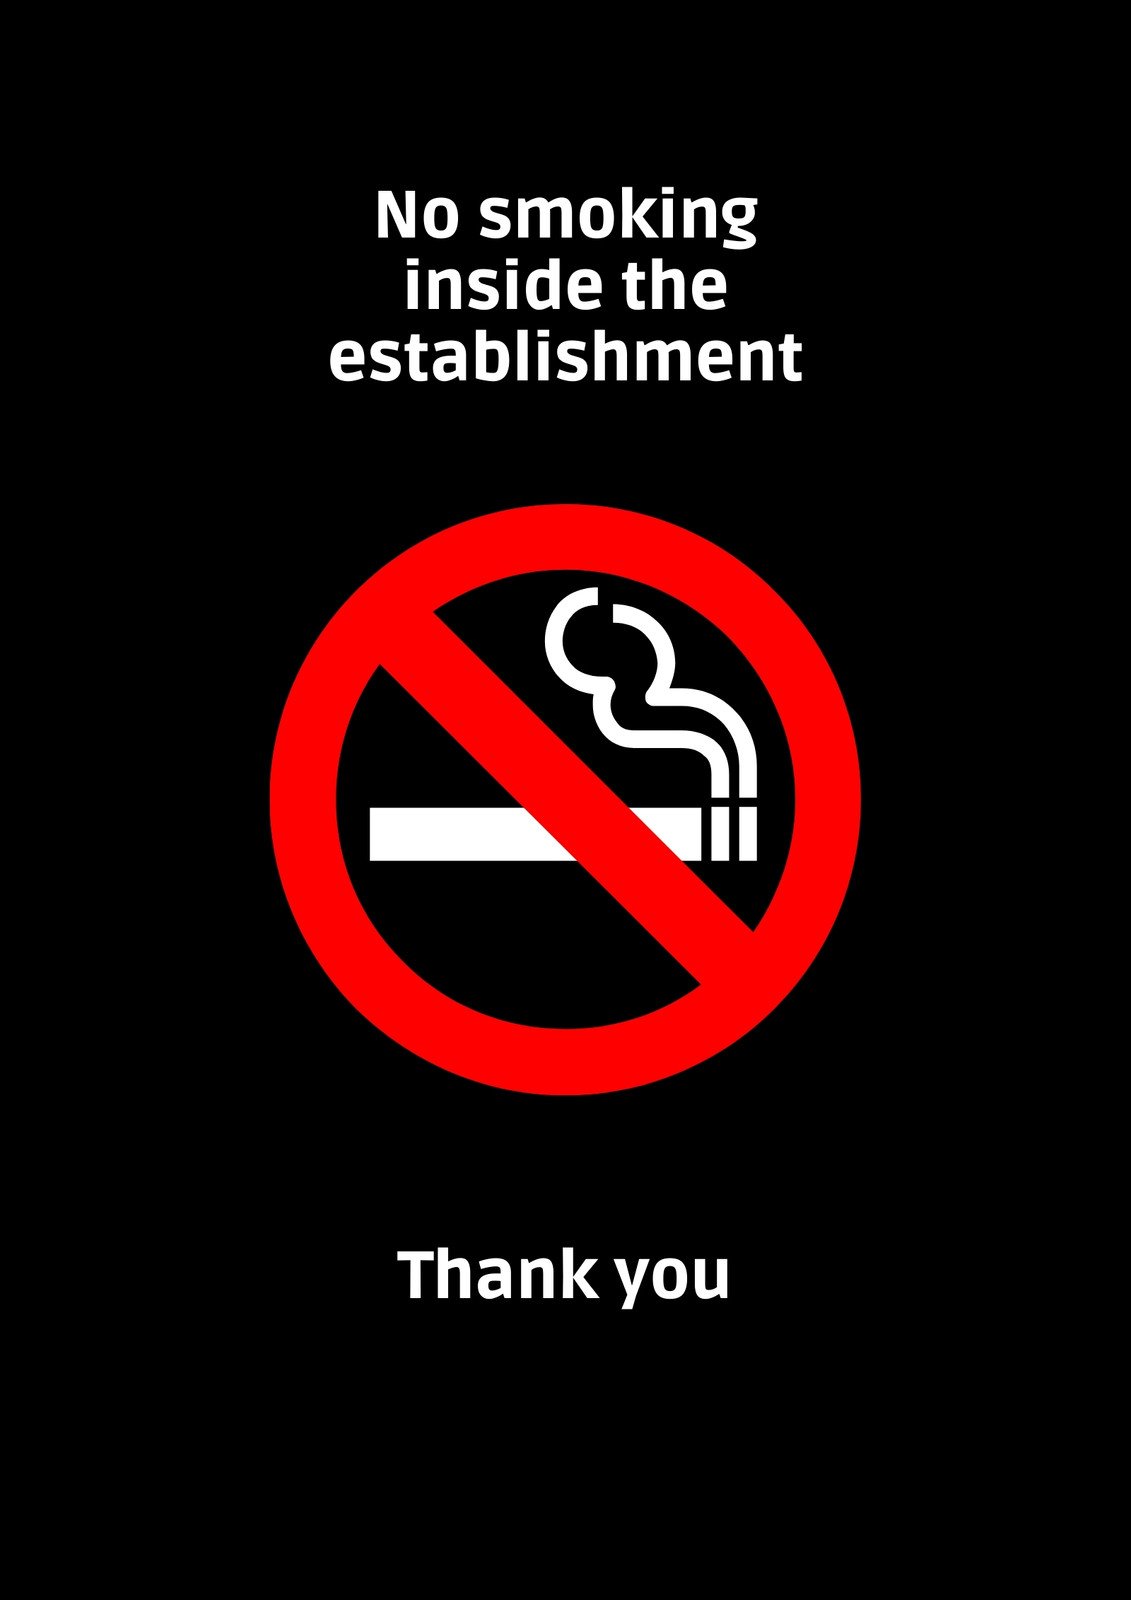 no smoking templates